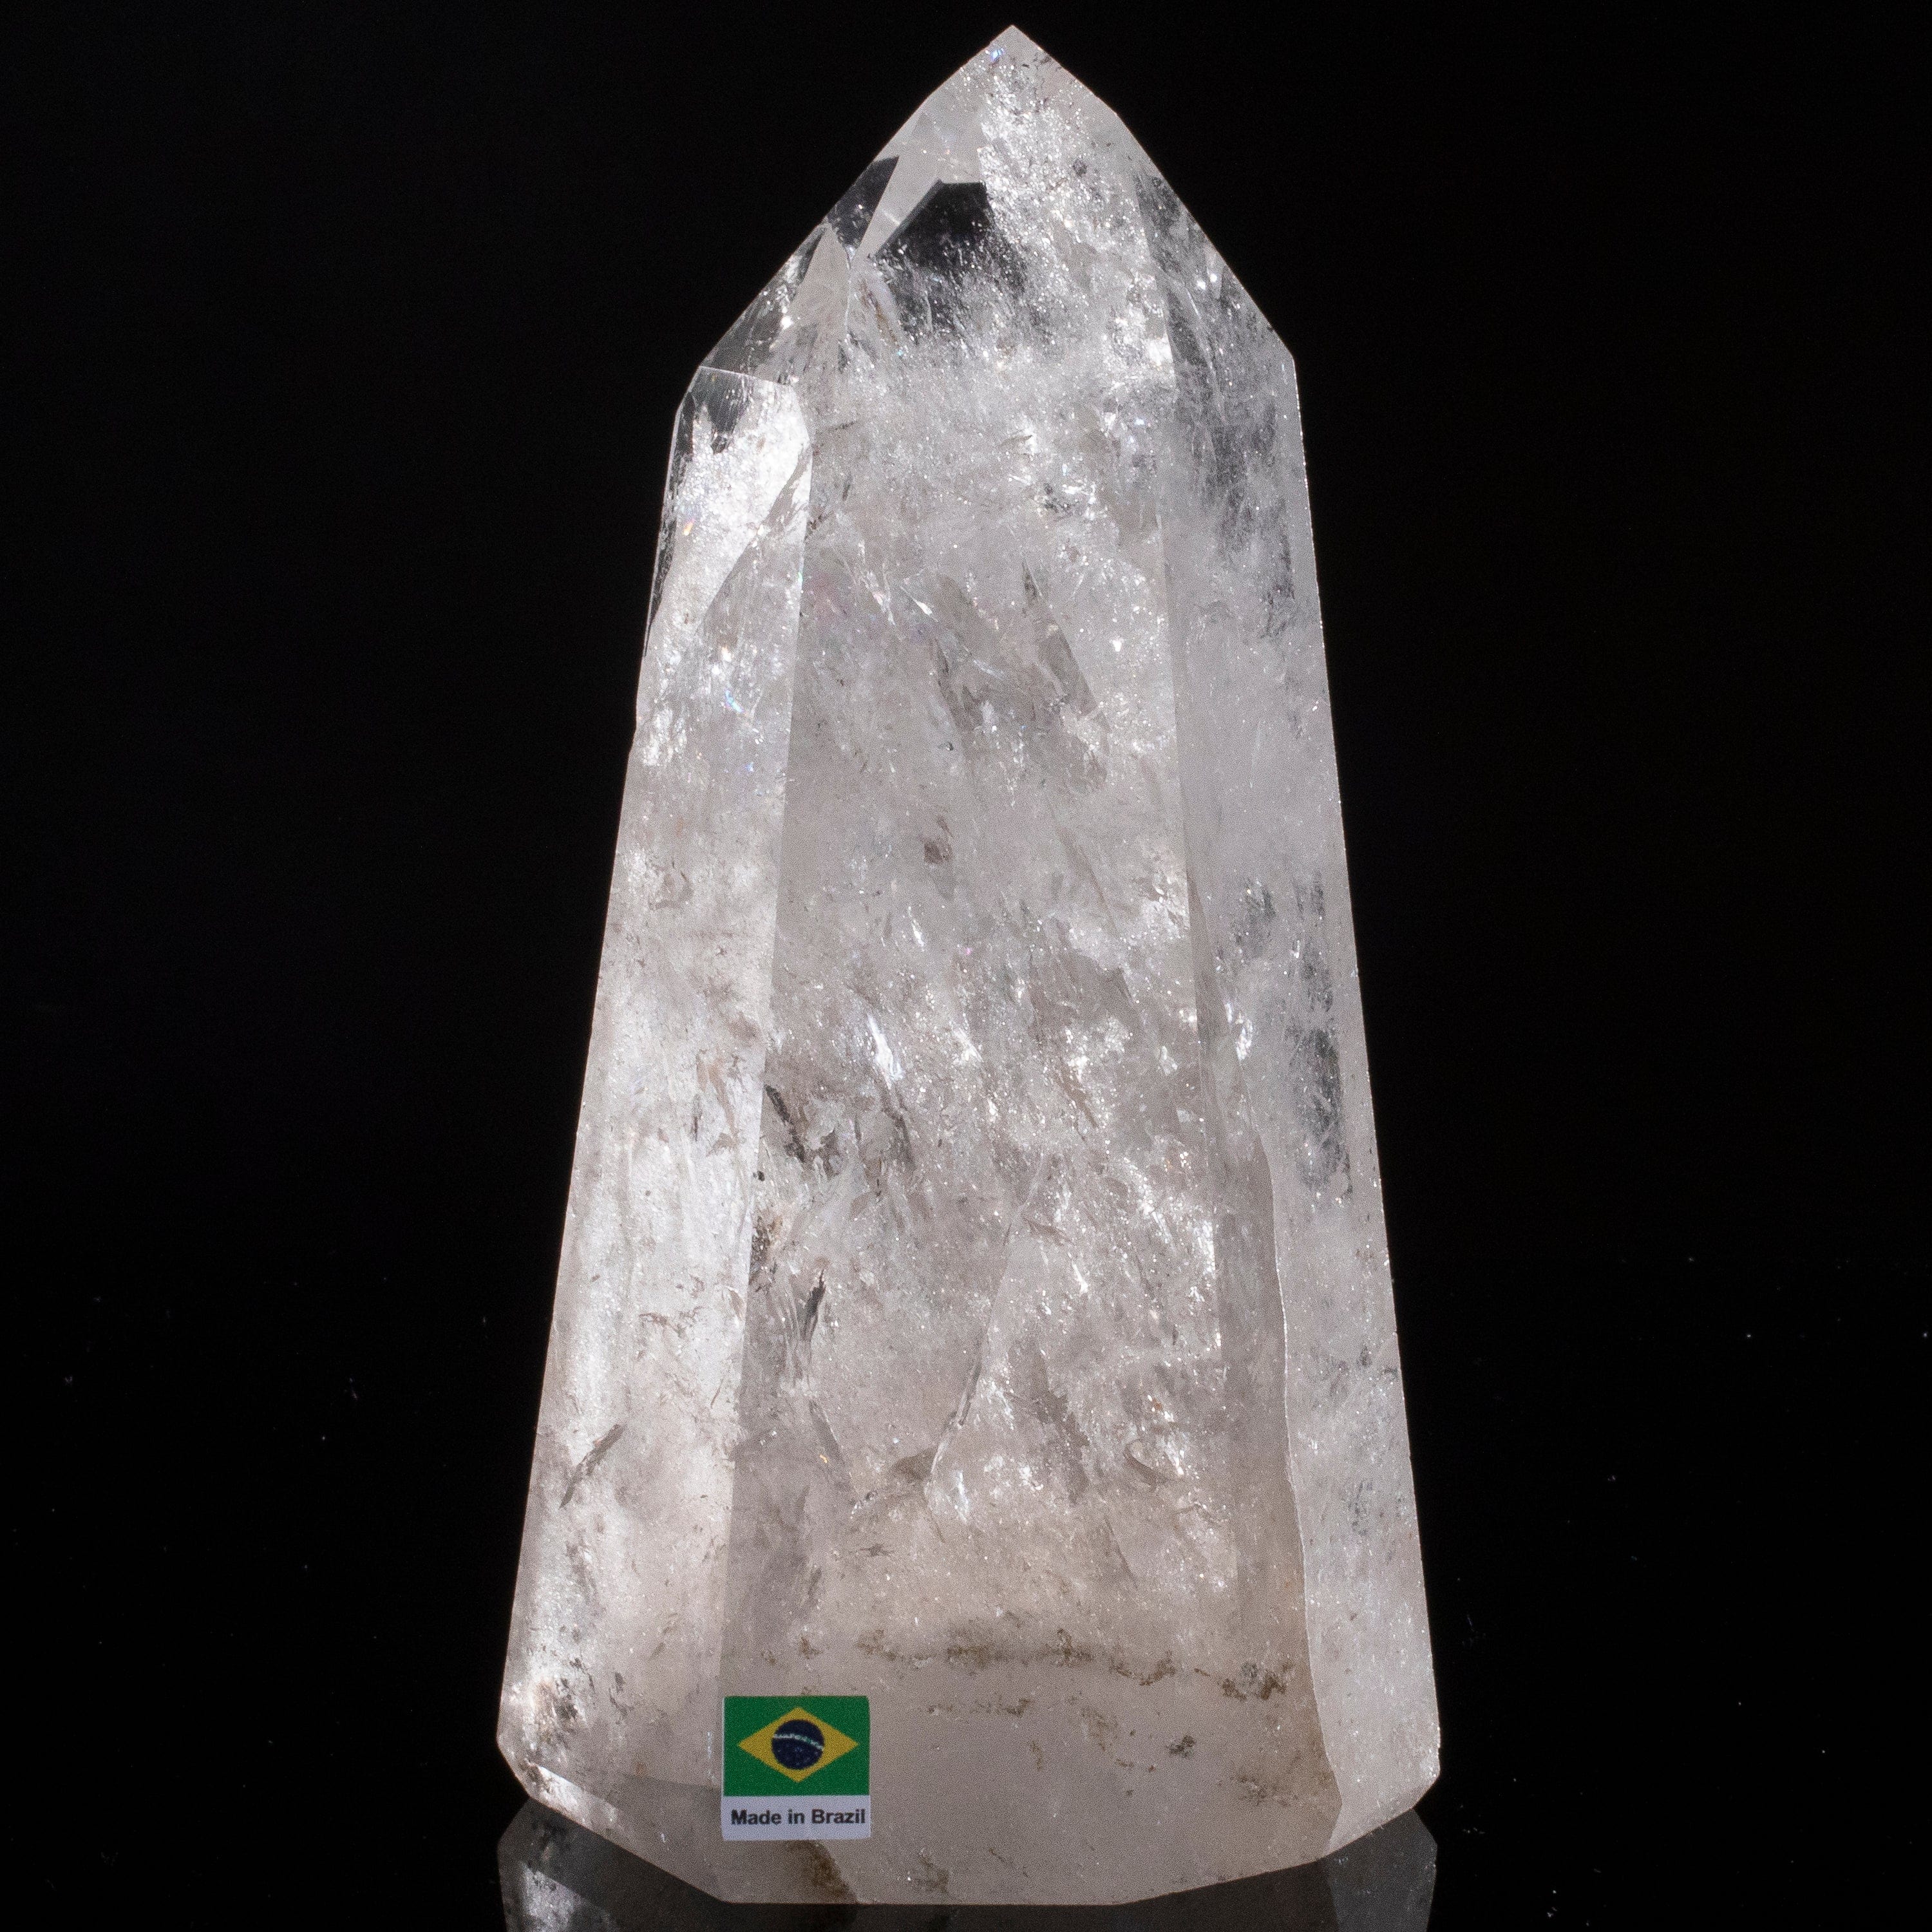 Kalifano Quartz Natural Quartz Obelisk from Brazil - 7.5" / 1,385 grams QZ1800.006